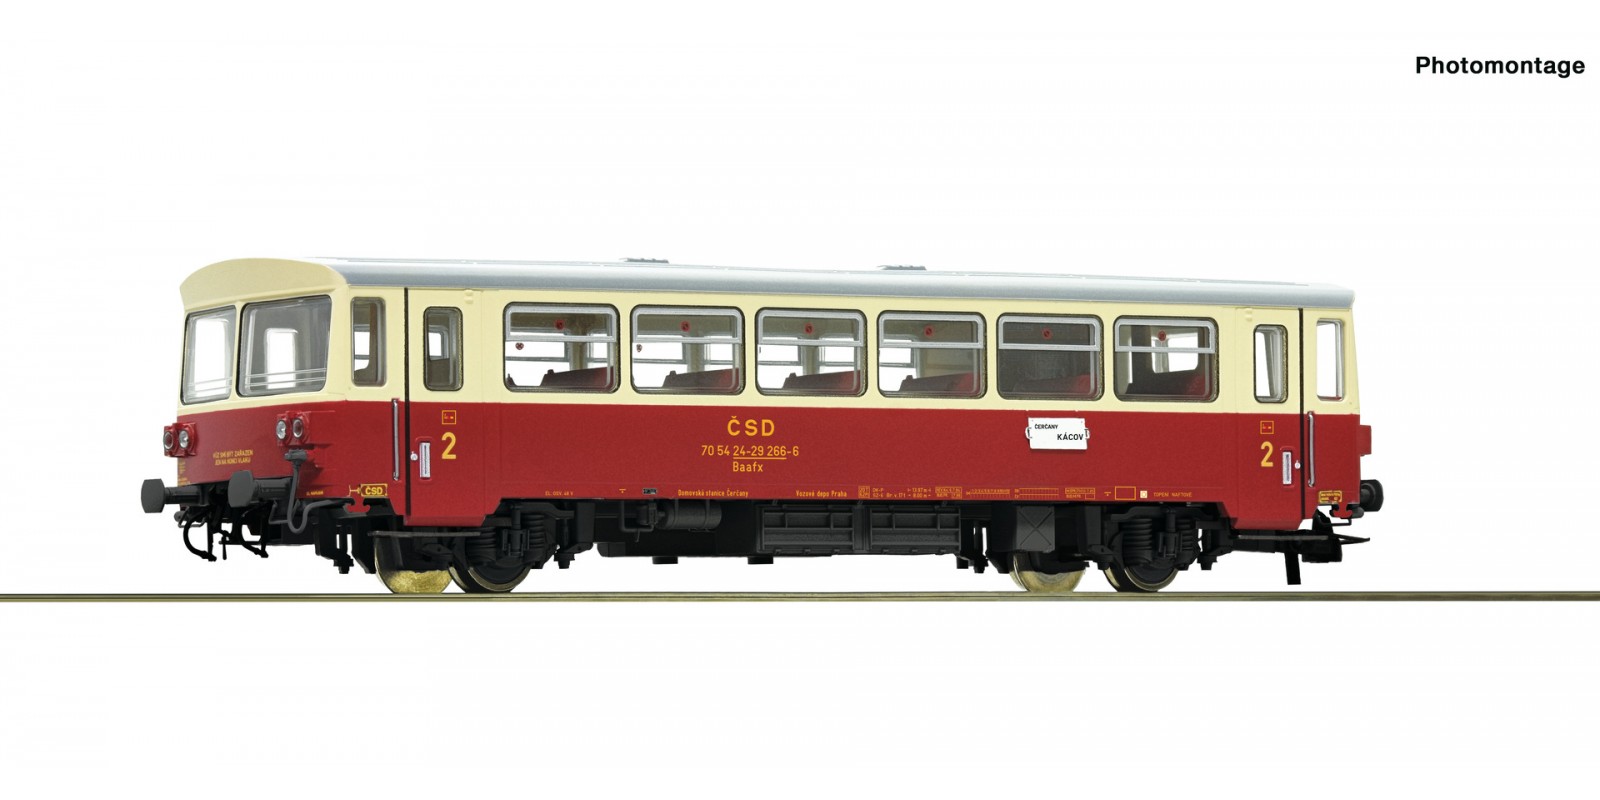 RO74241 Trailer for diesel railcar M 152.0, CSD